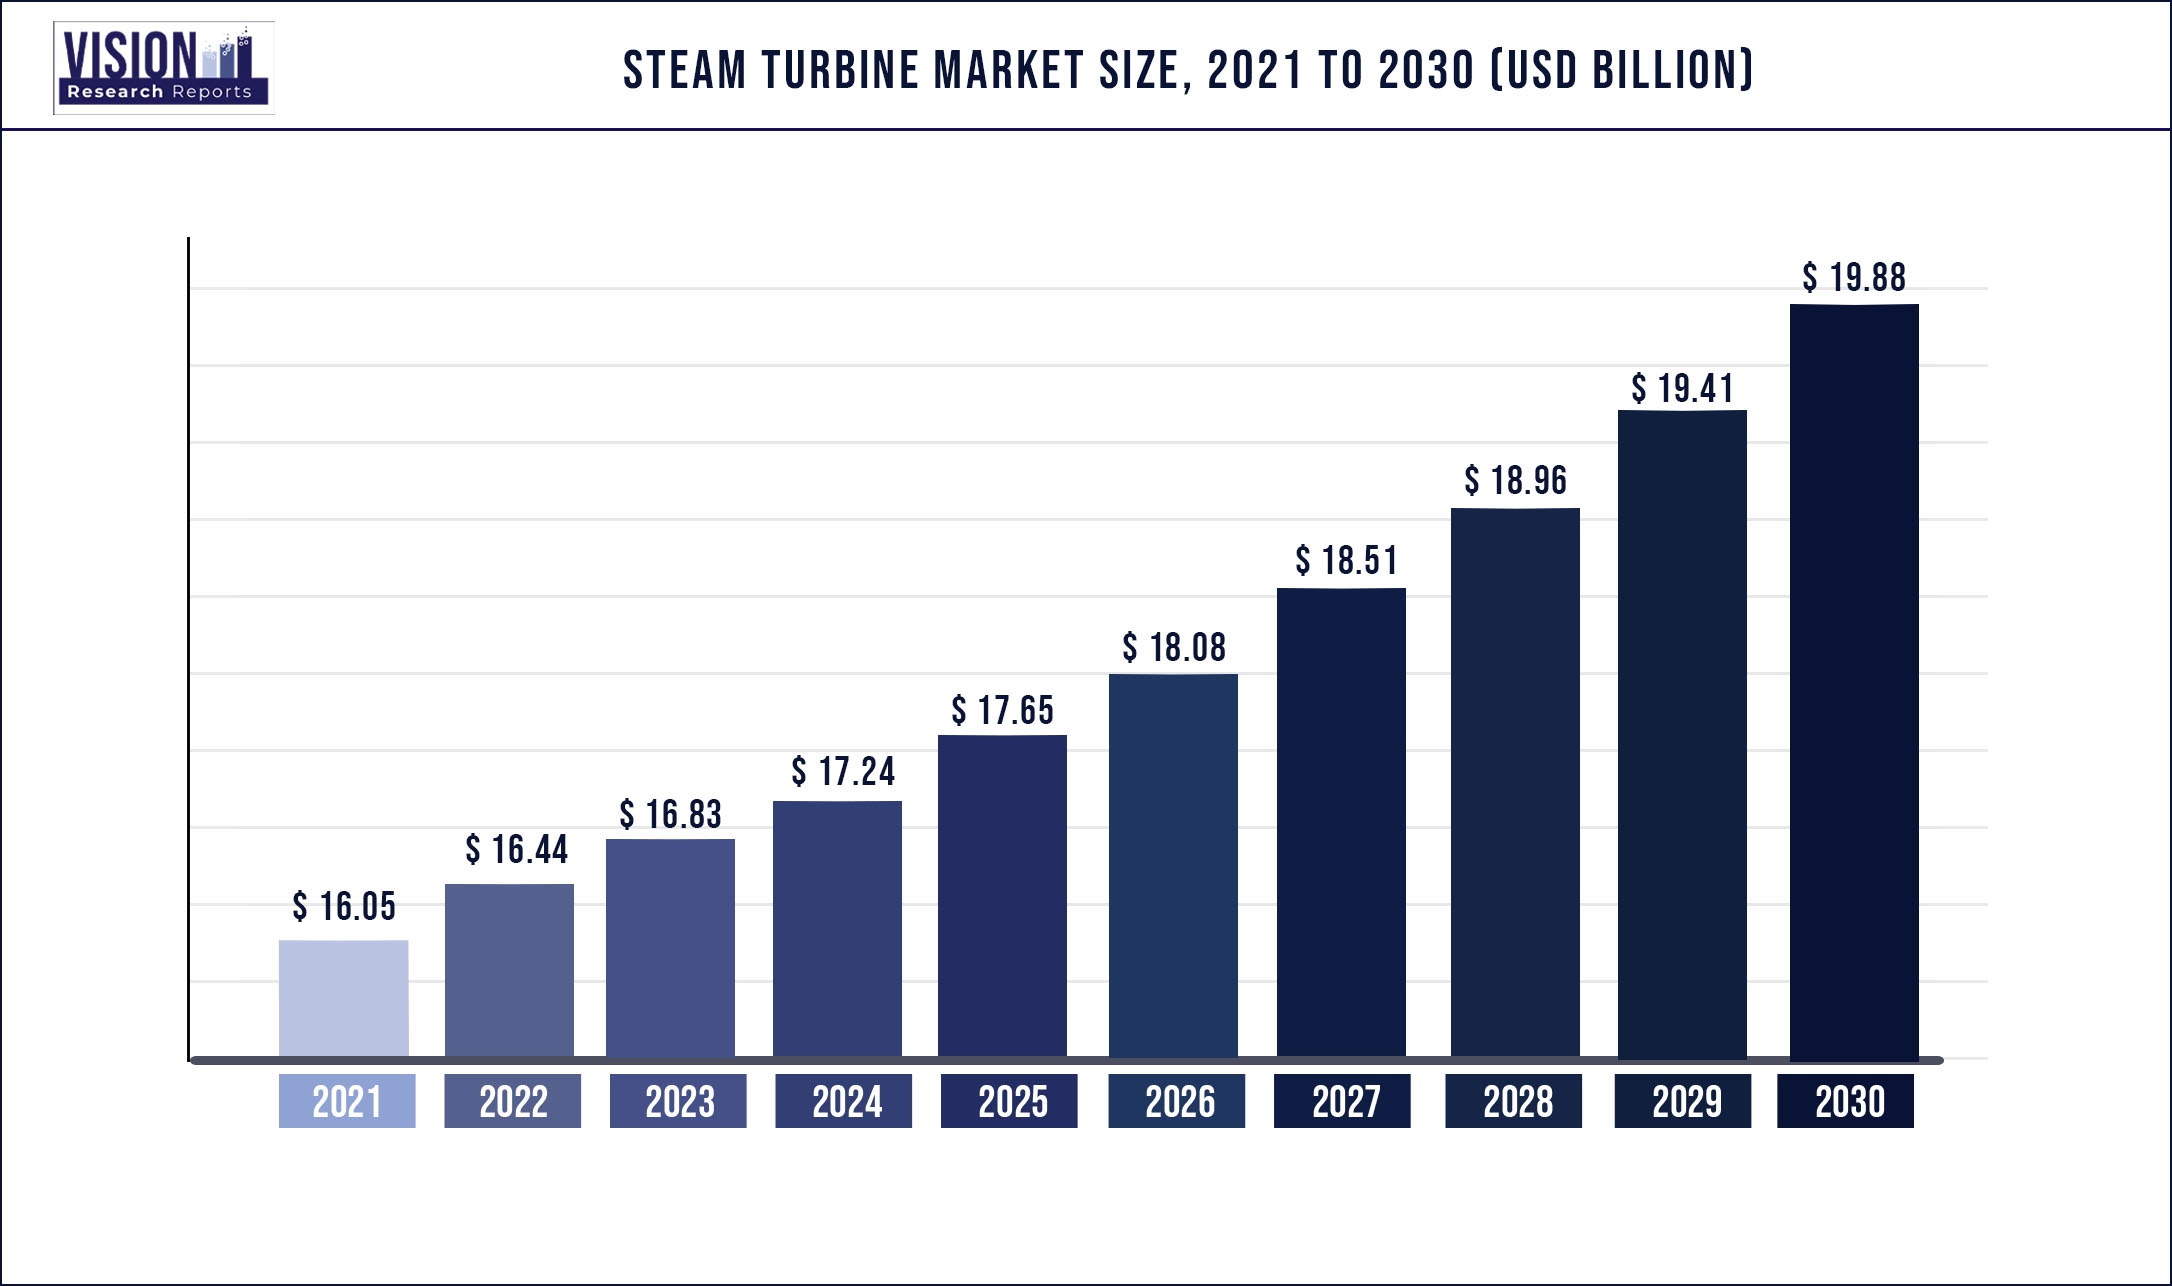 Steam Turbine Market Size 2021 to 2030